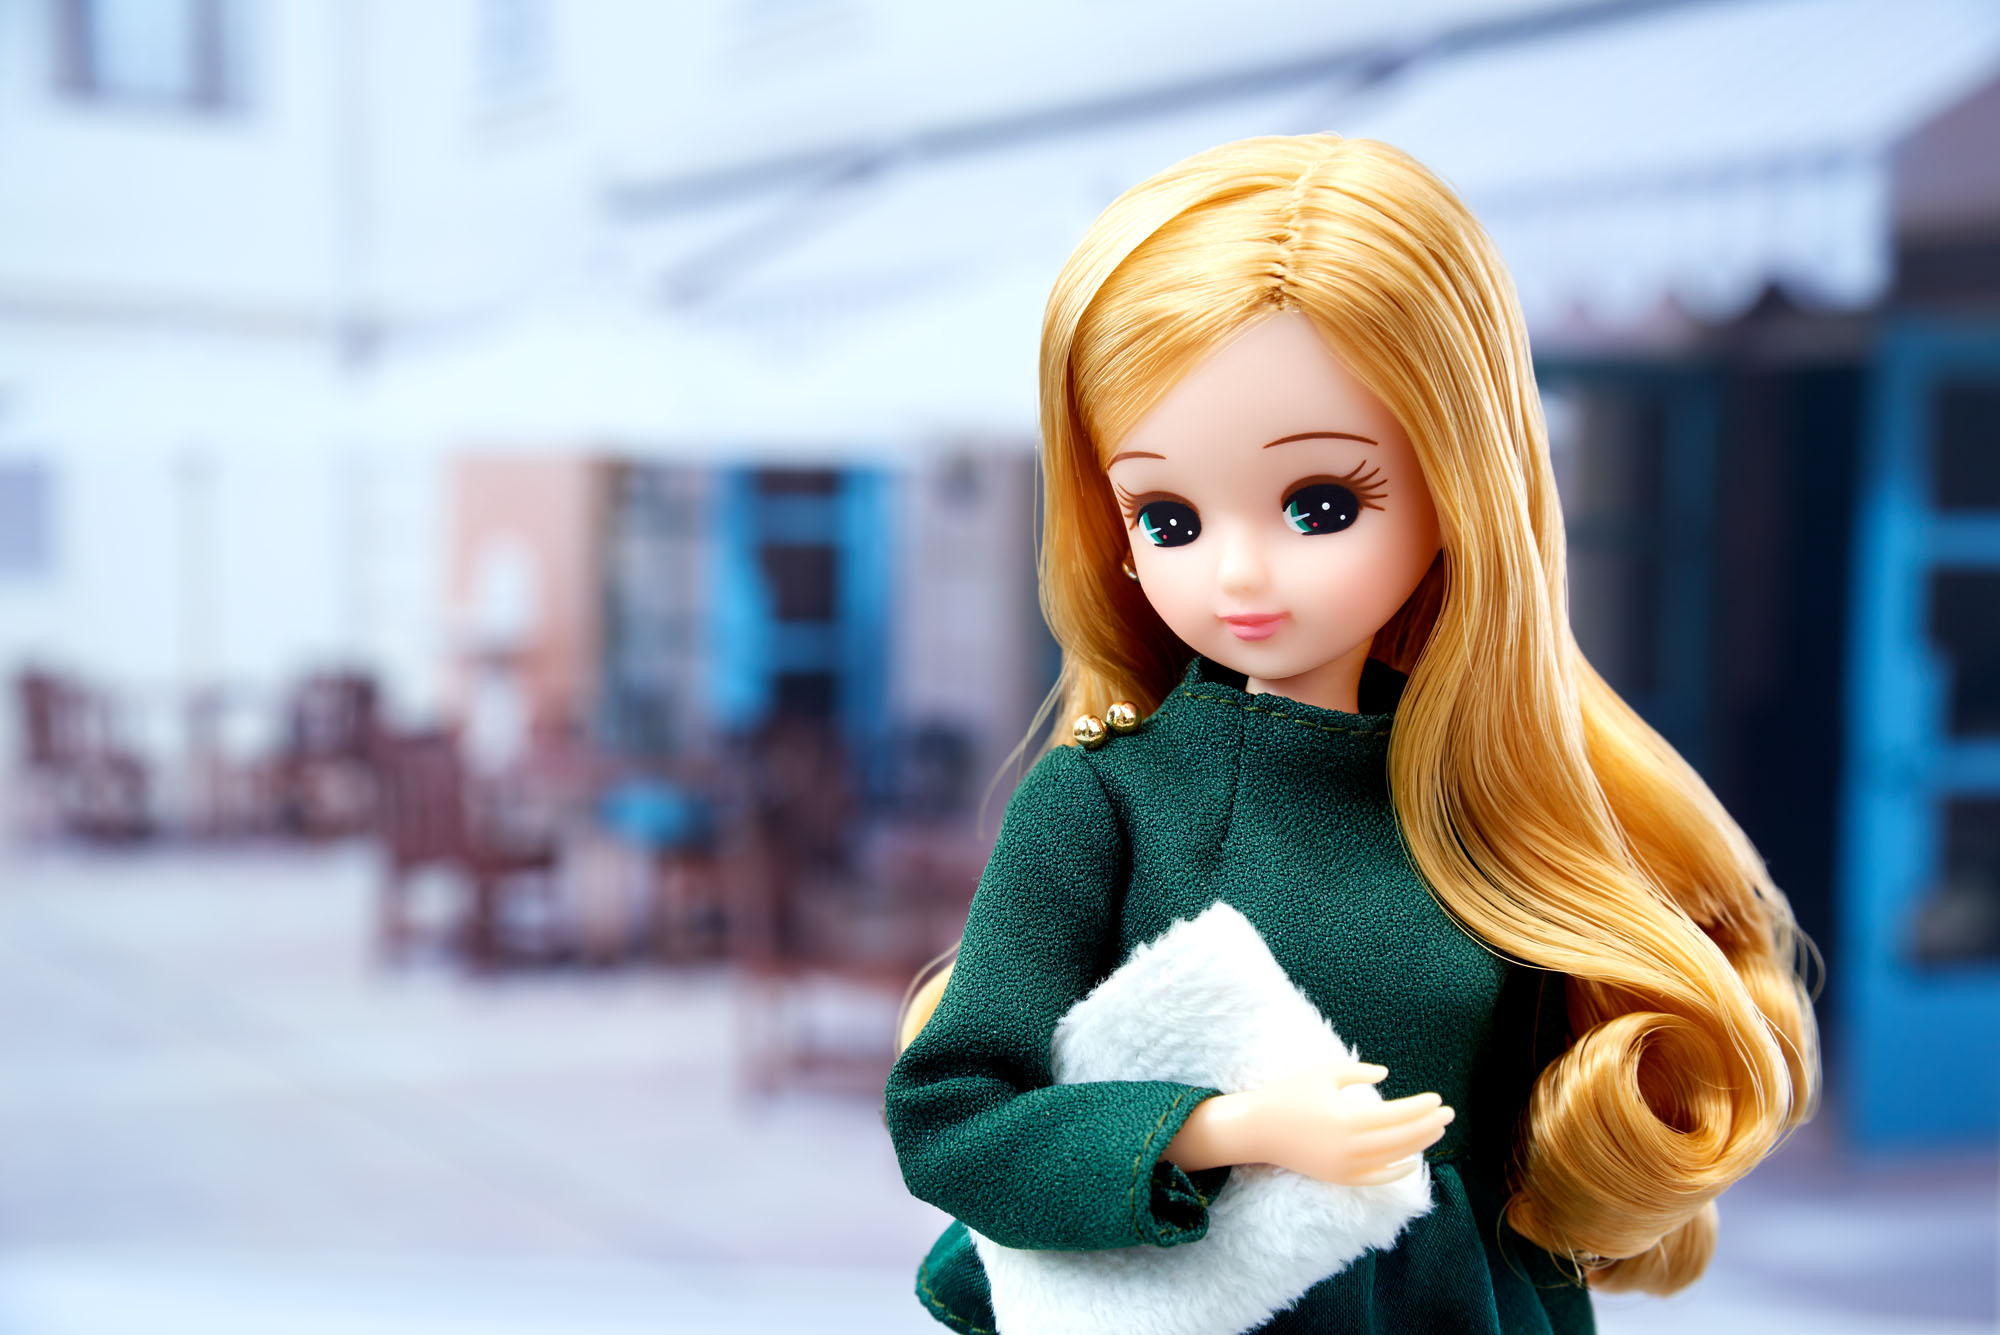 追加生産決定 Stylish Doll Collections News Licca Kayama Official リカちゃん オフィシャル情報サイト タカラトミー